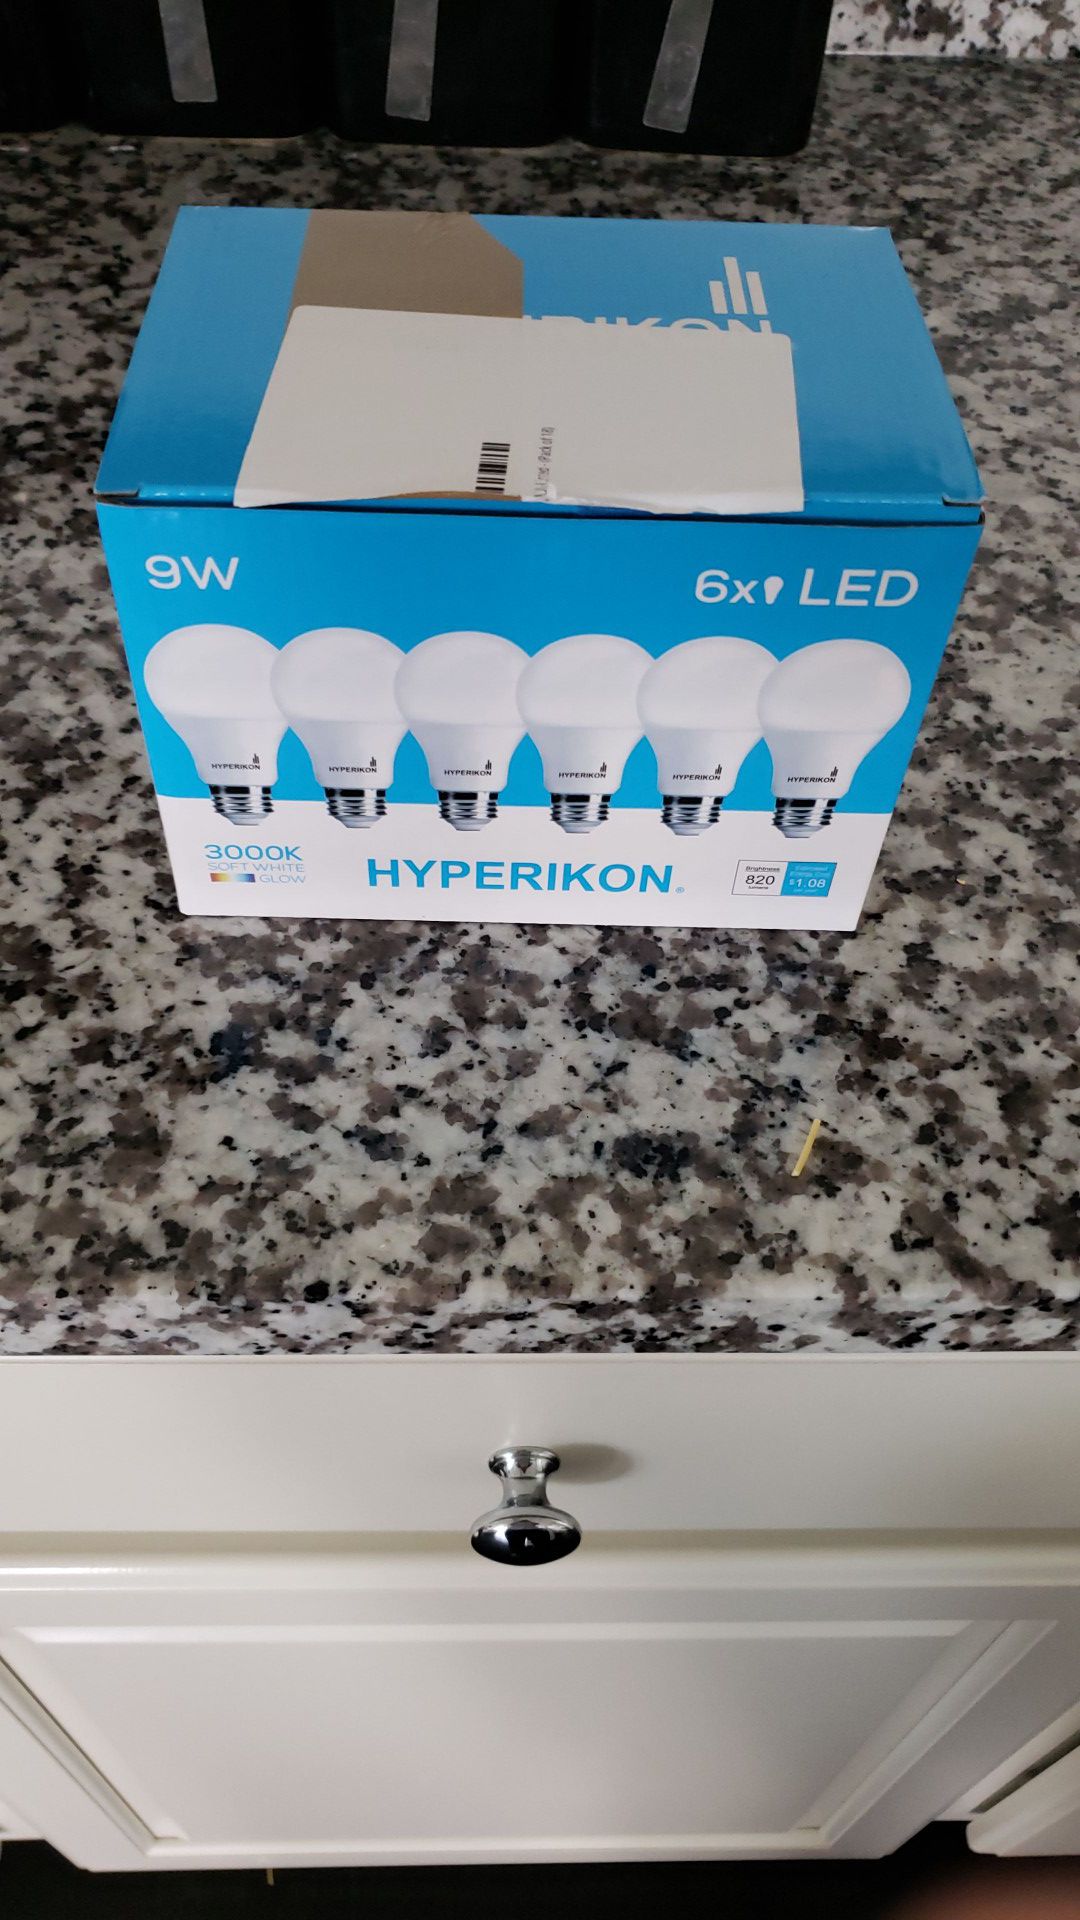 Brand new LED light bulbs